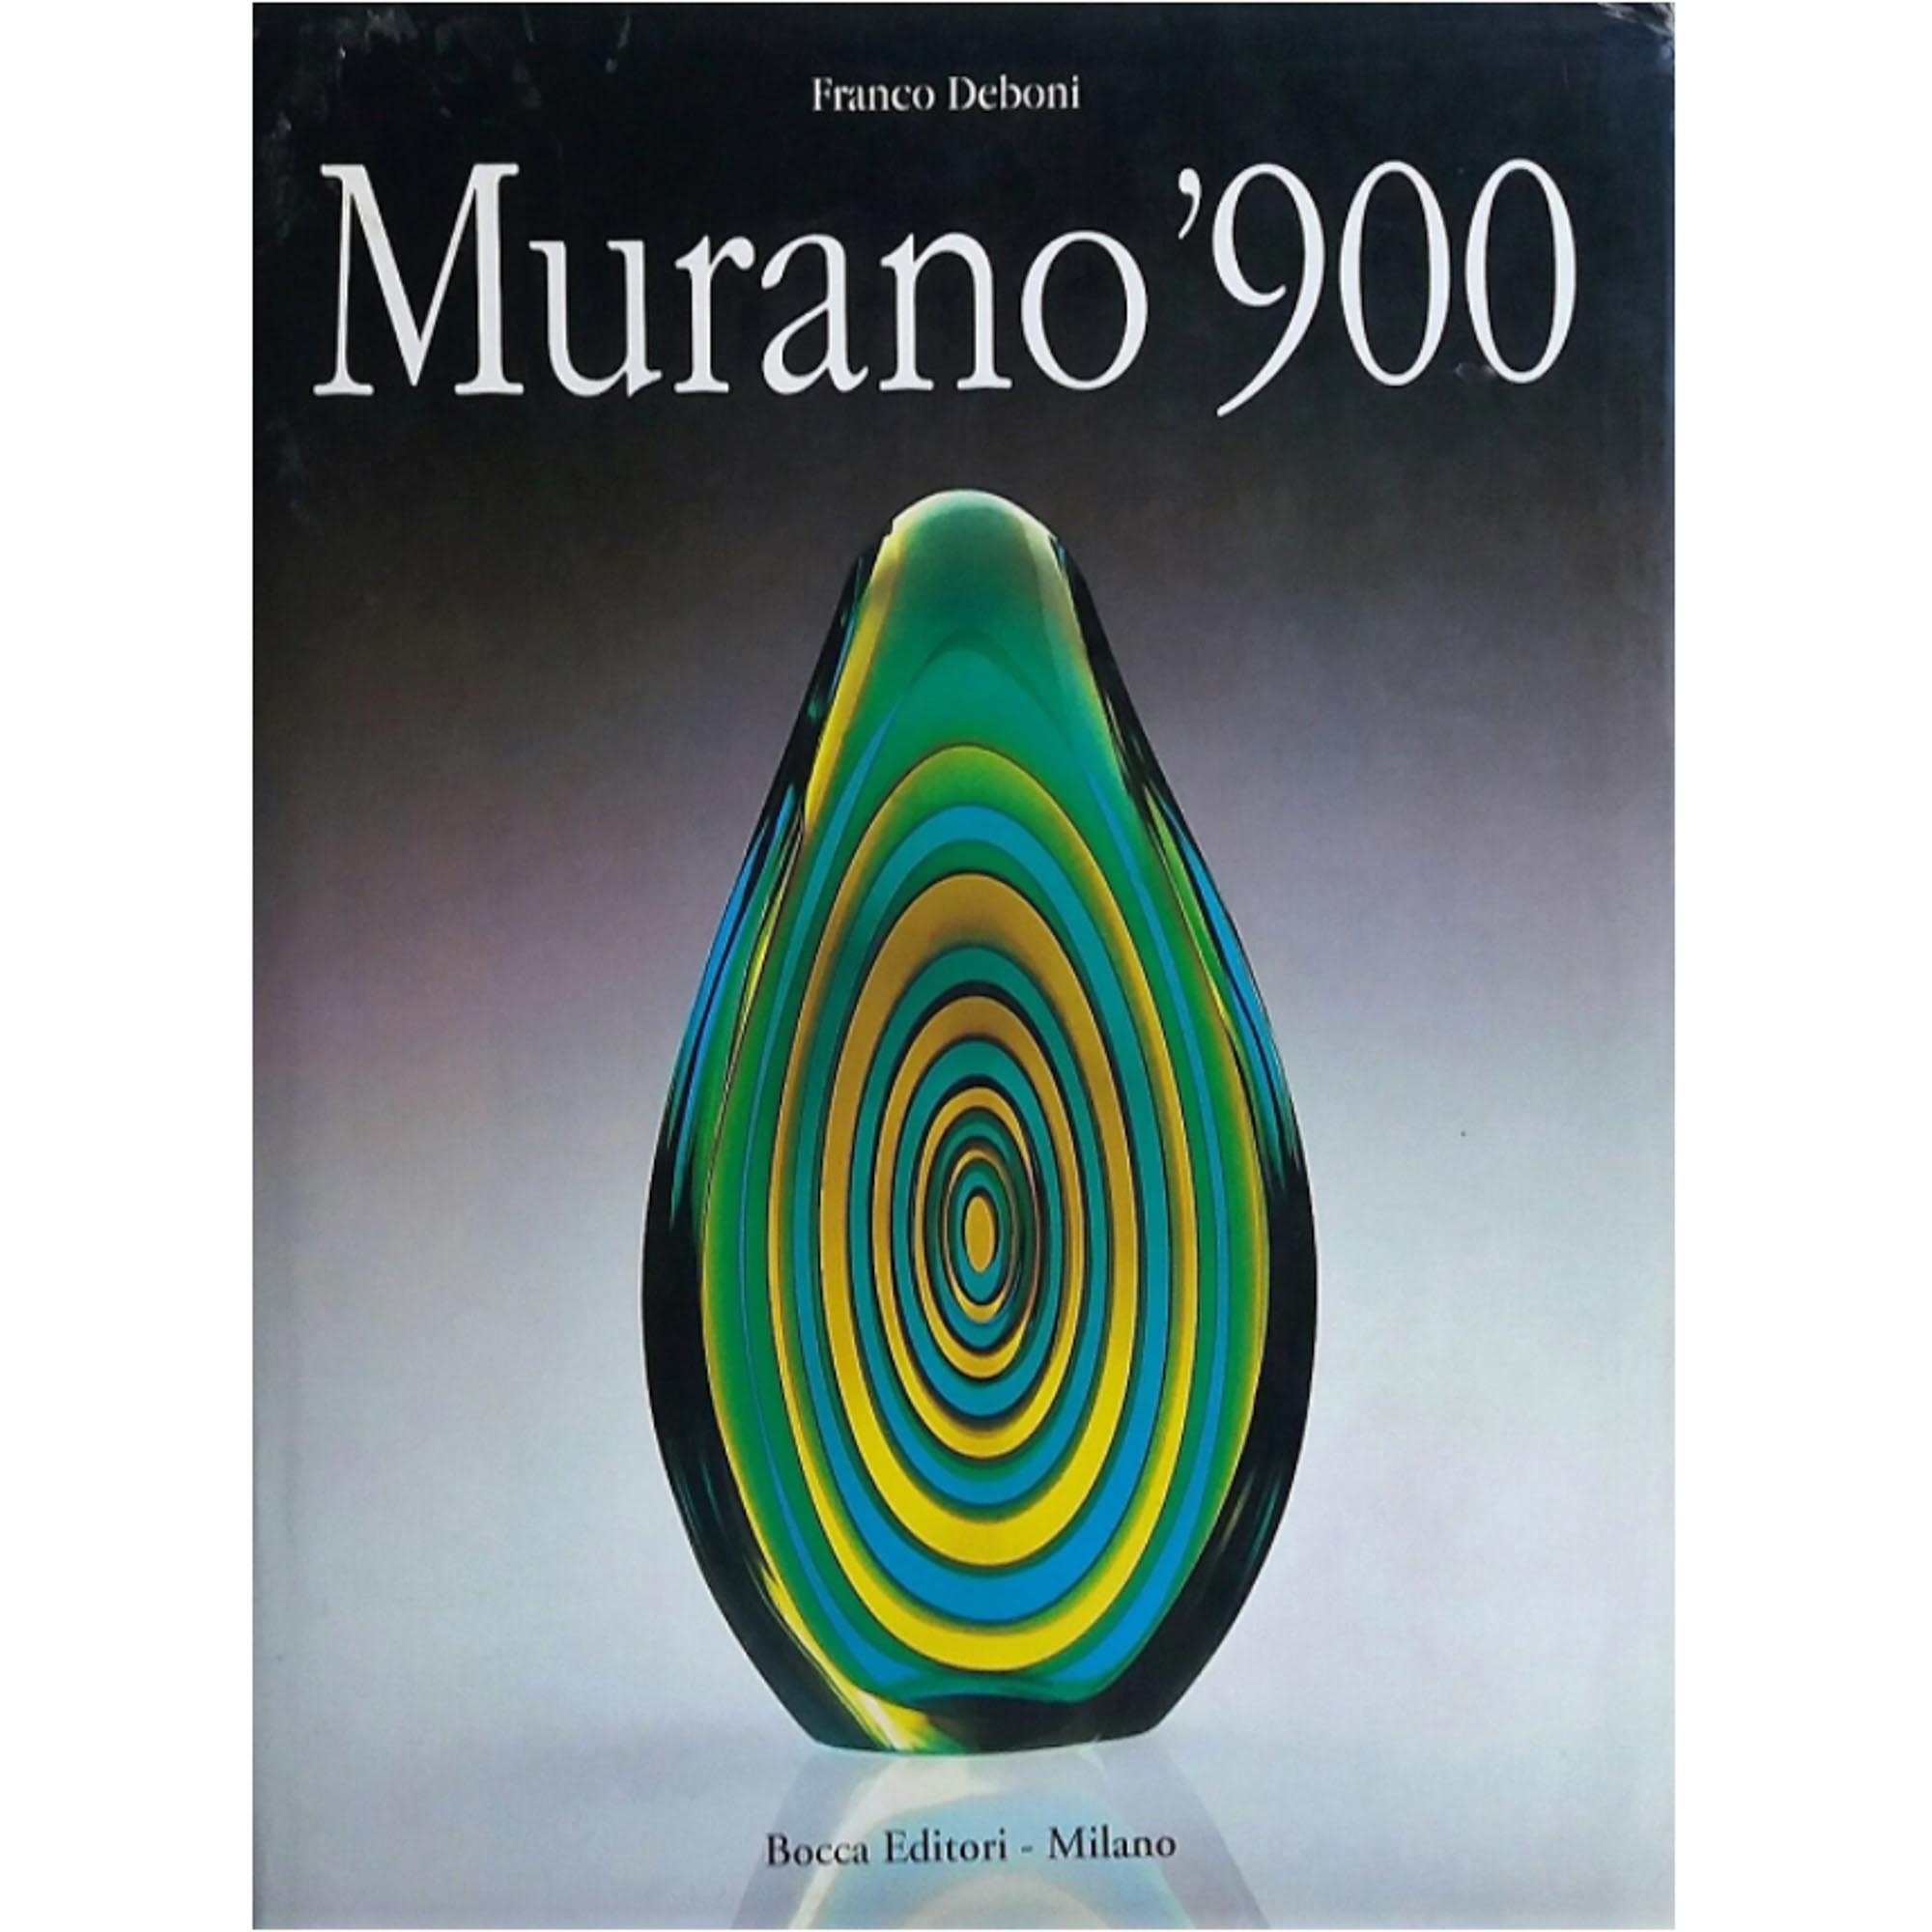 Murano 900